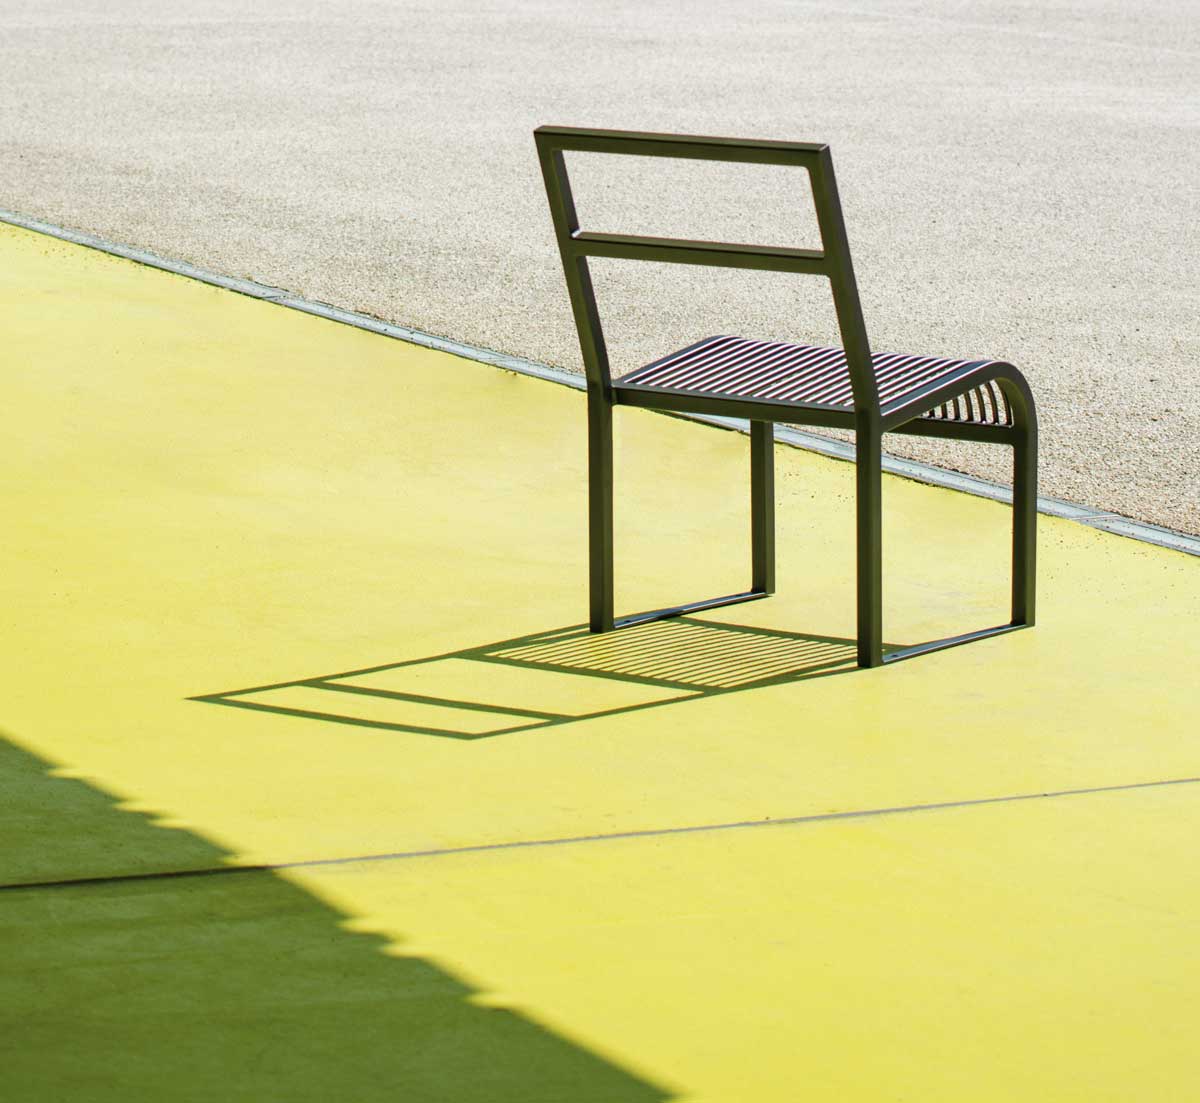 Chaise ANTIBES conçu et fabriqué par Aréa mobilier urbain